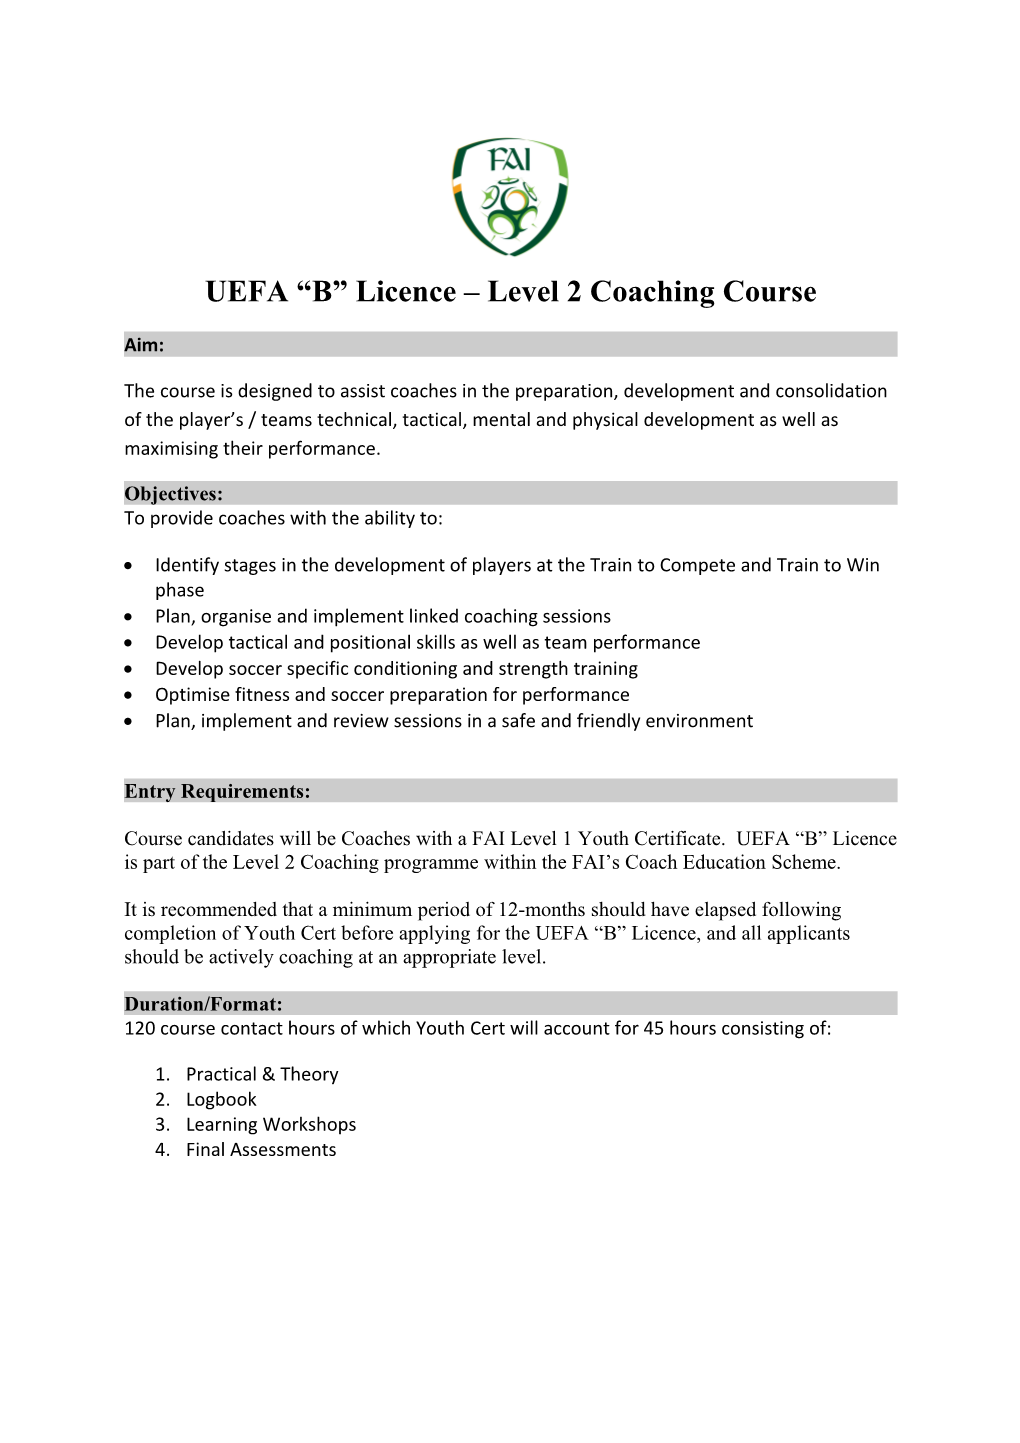 UEFA B Licence Level 2 Coaching Course